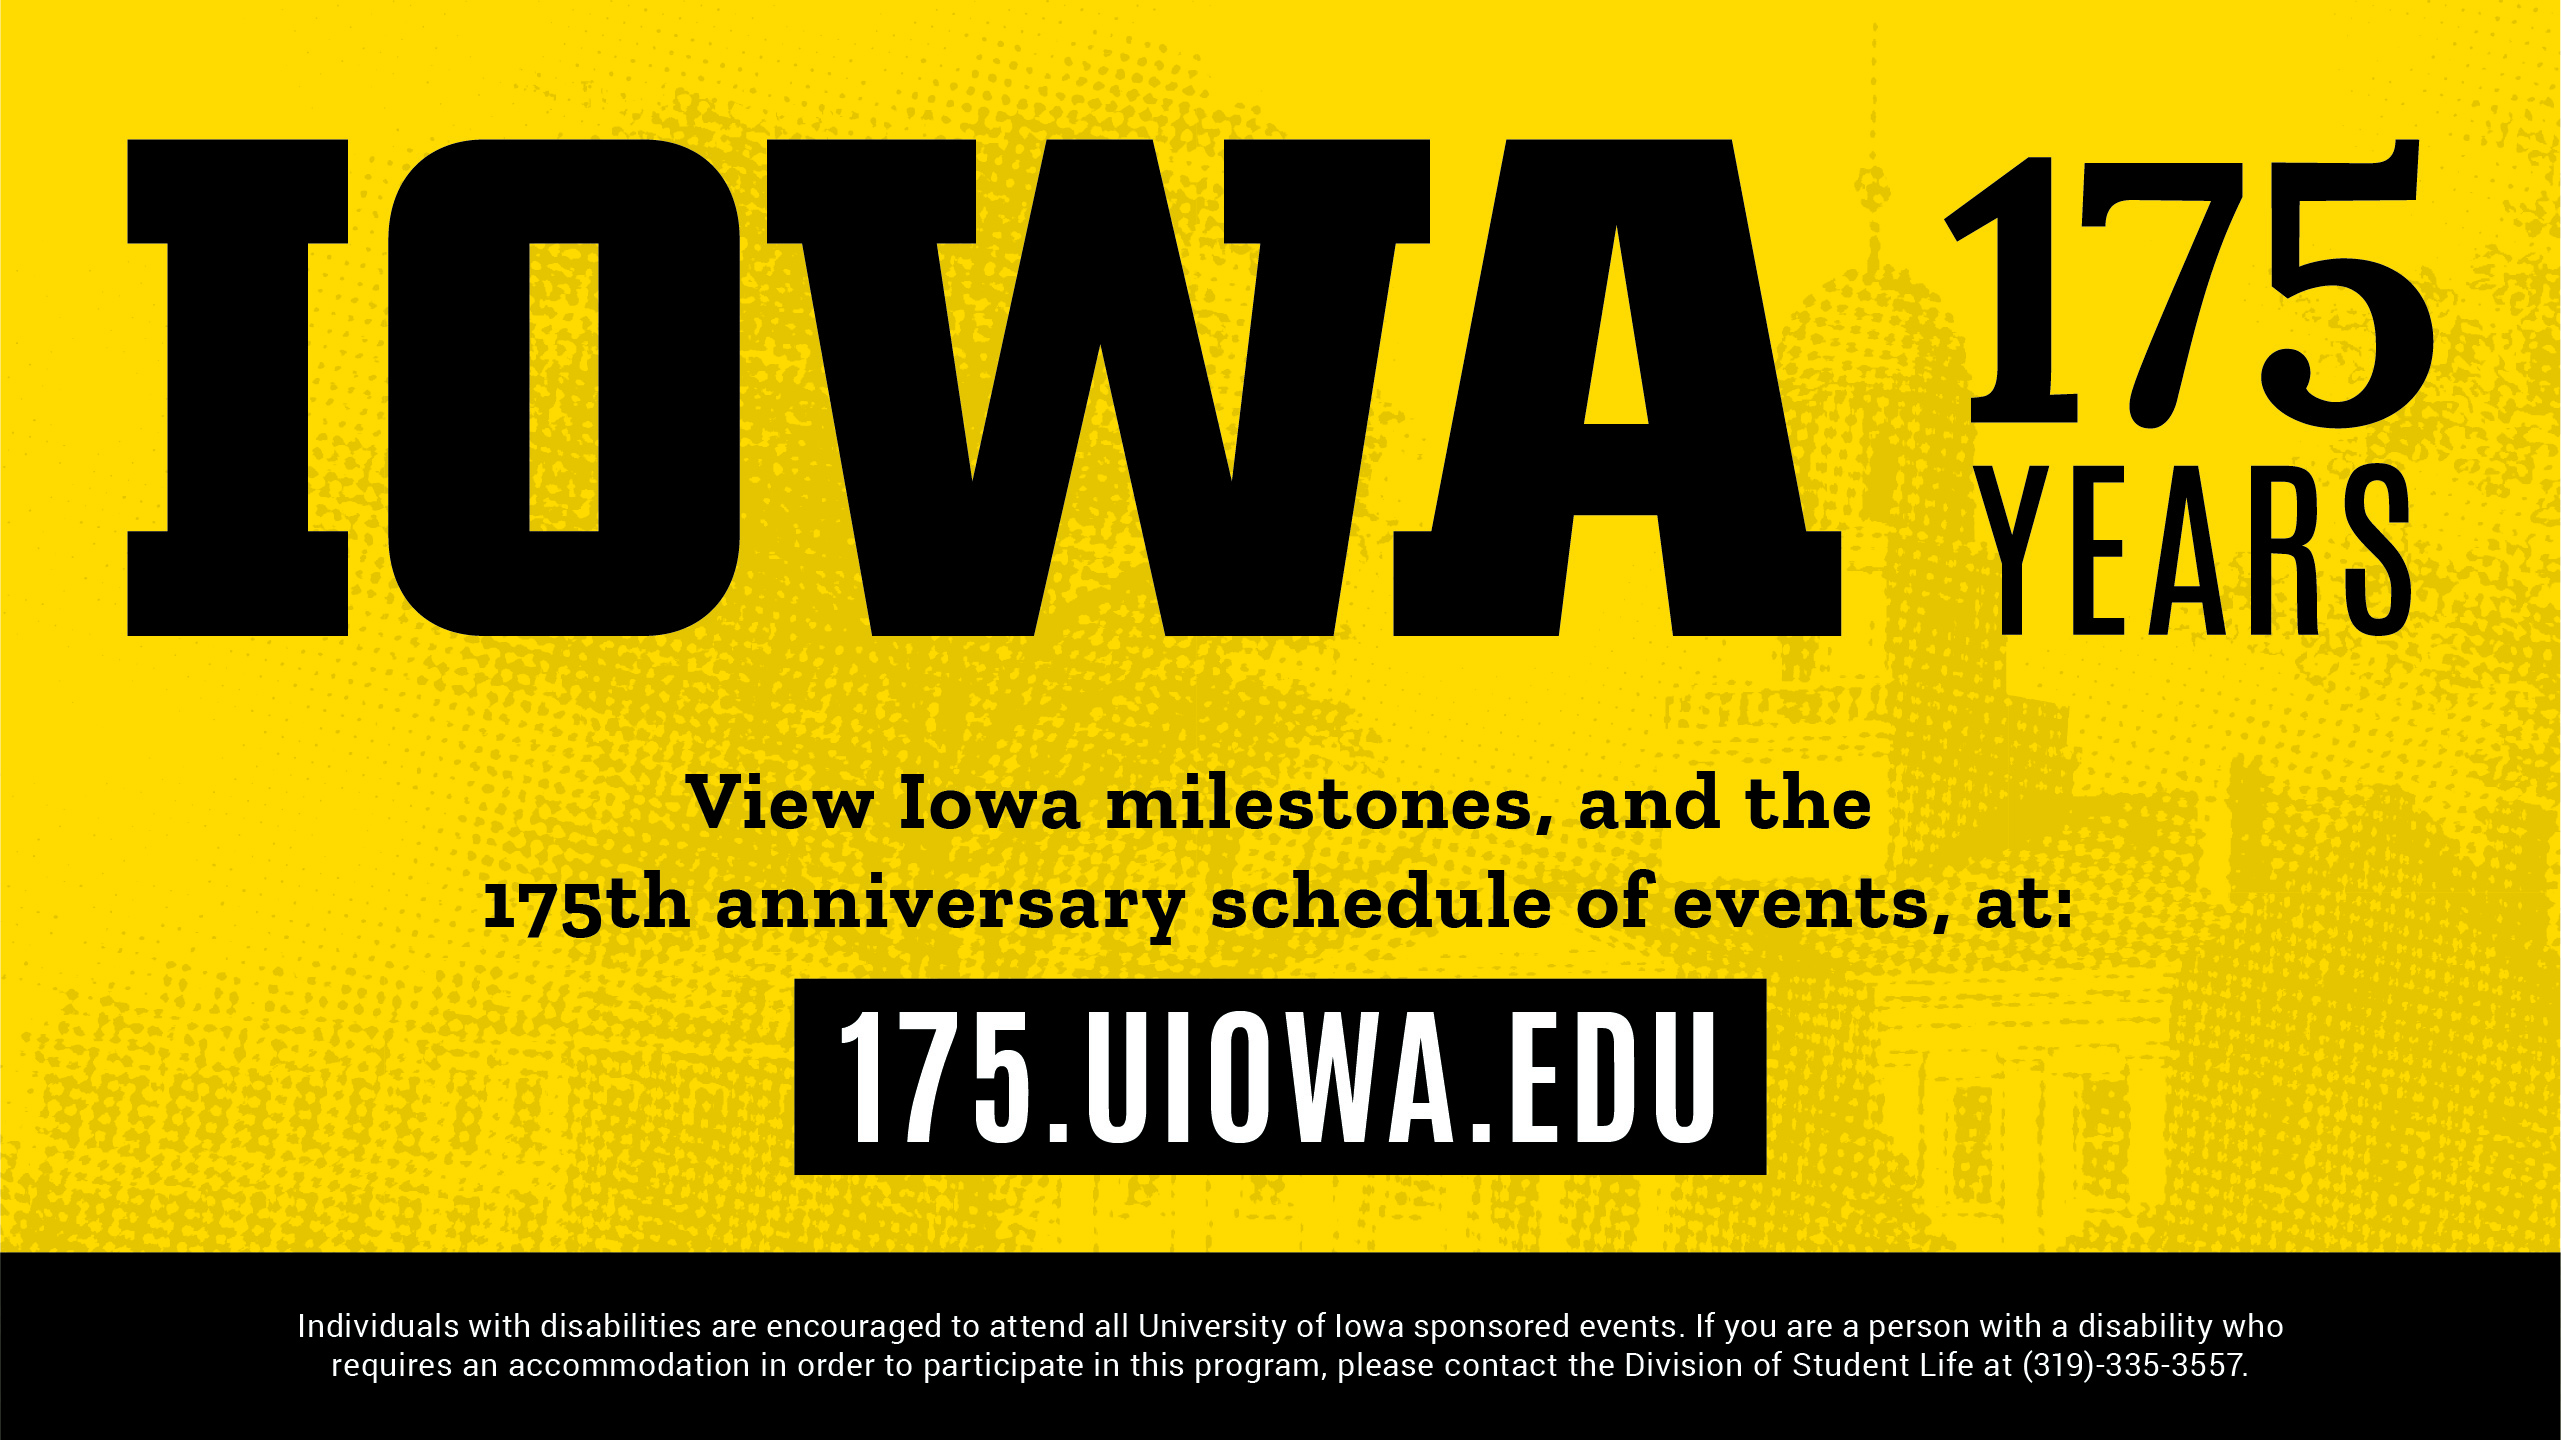 IOWA 175 Years View Iowa Milestones, and the 175th anniversary schedule of events, at: 175.uiowa.edu